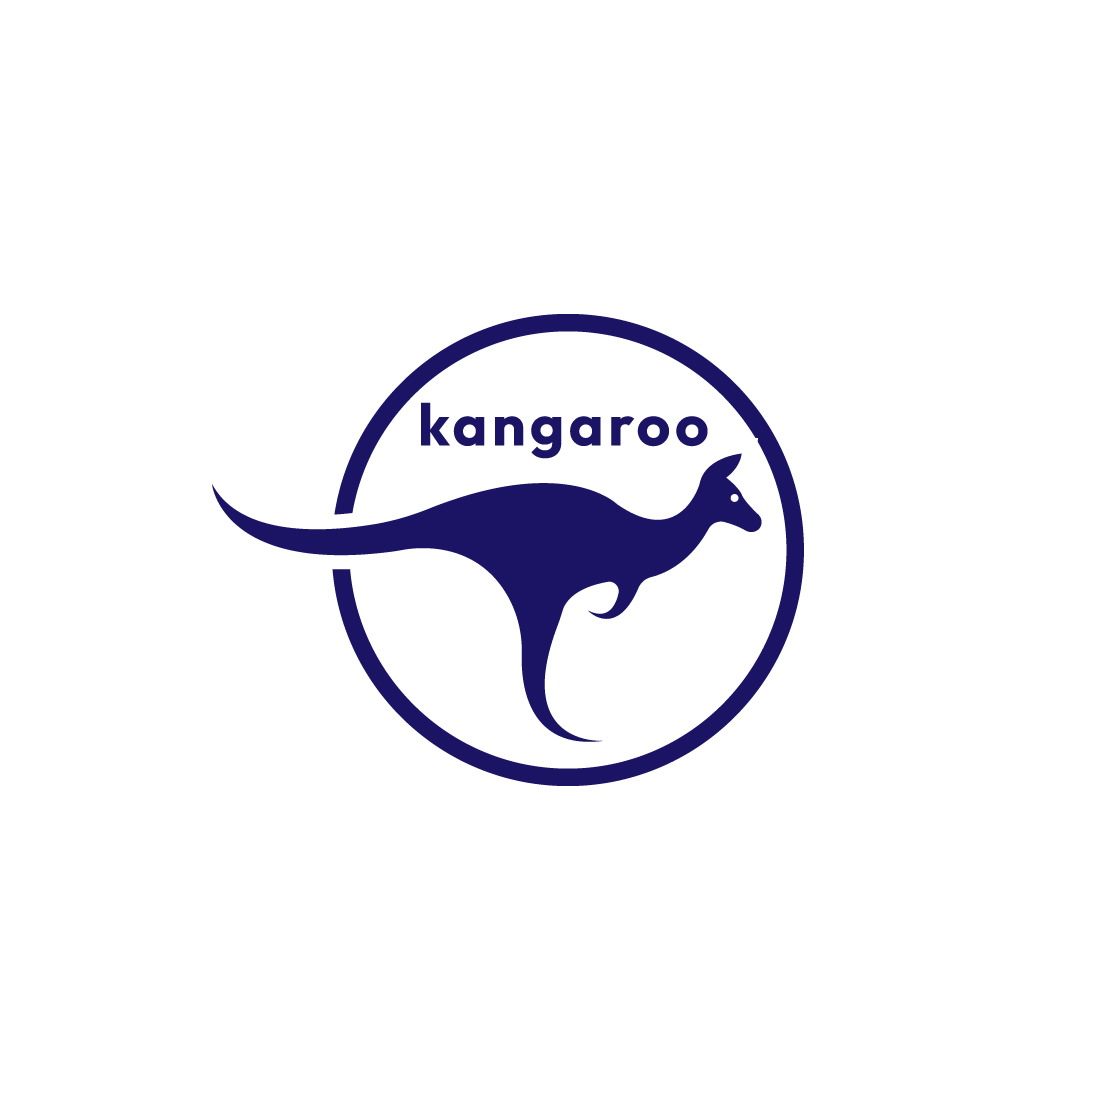 Kangaroo Animal Logo and Icon preview image.